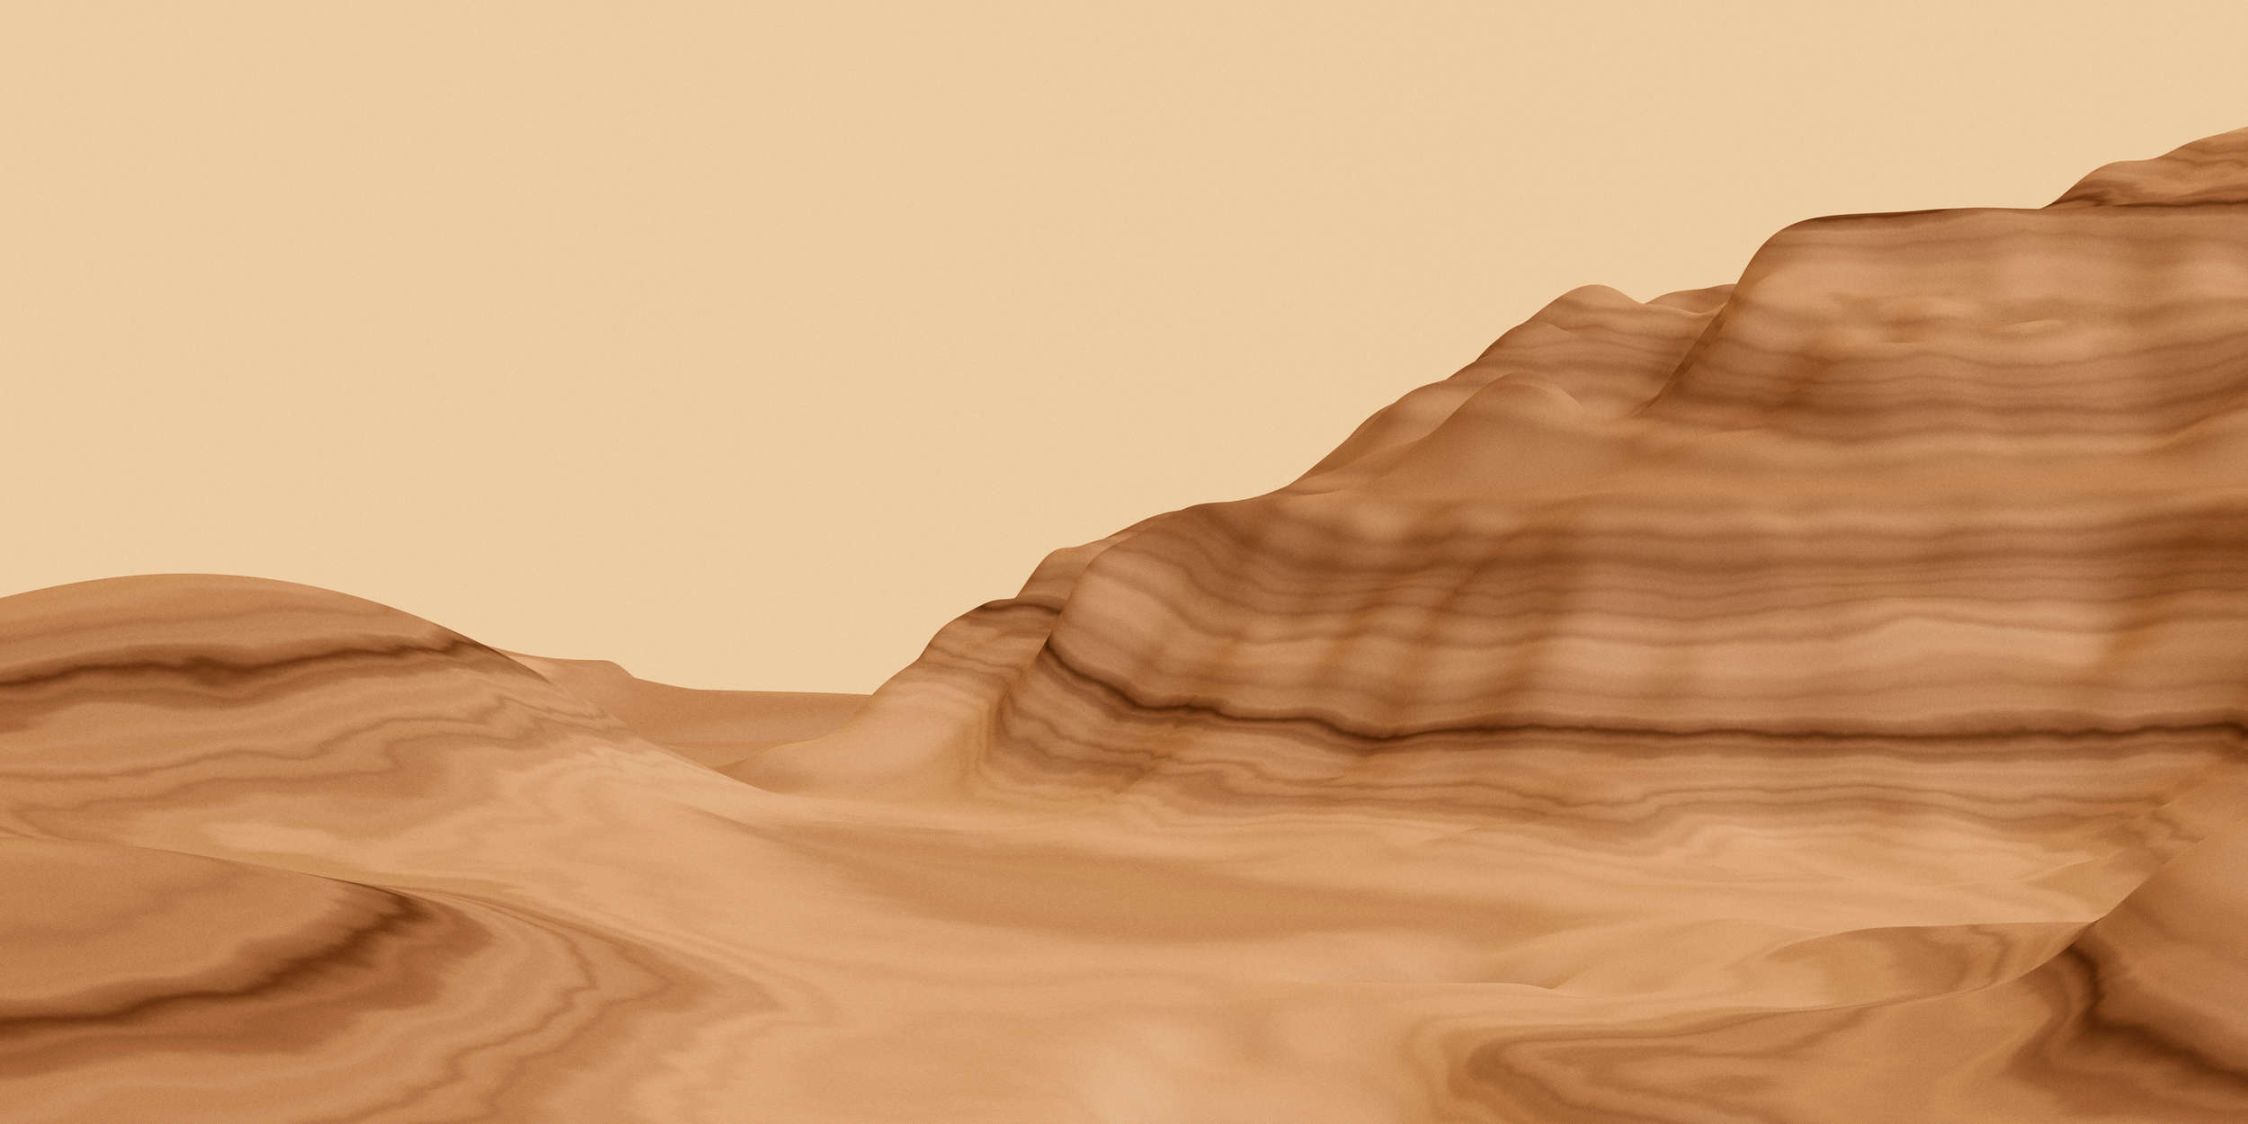             Fotomurali »luke« - Paesaggio astratto del deserto - Materiali non tessuto premium liscio e leggermente lucido
        